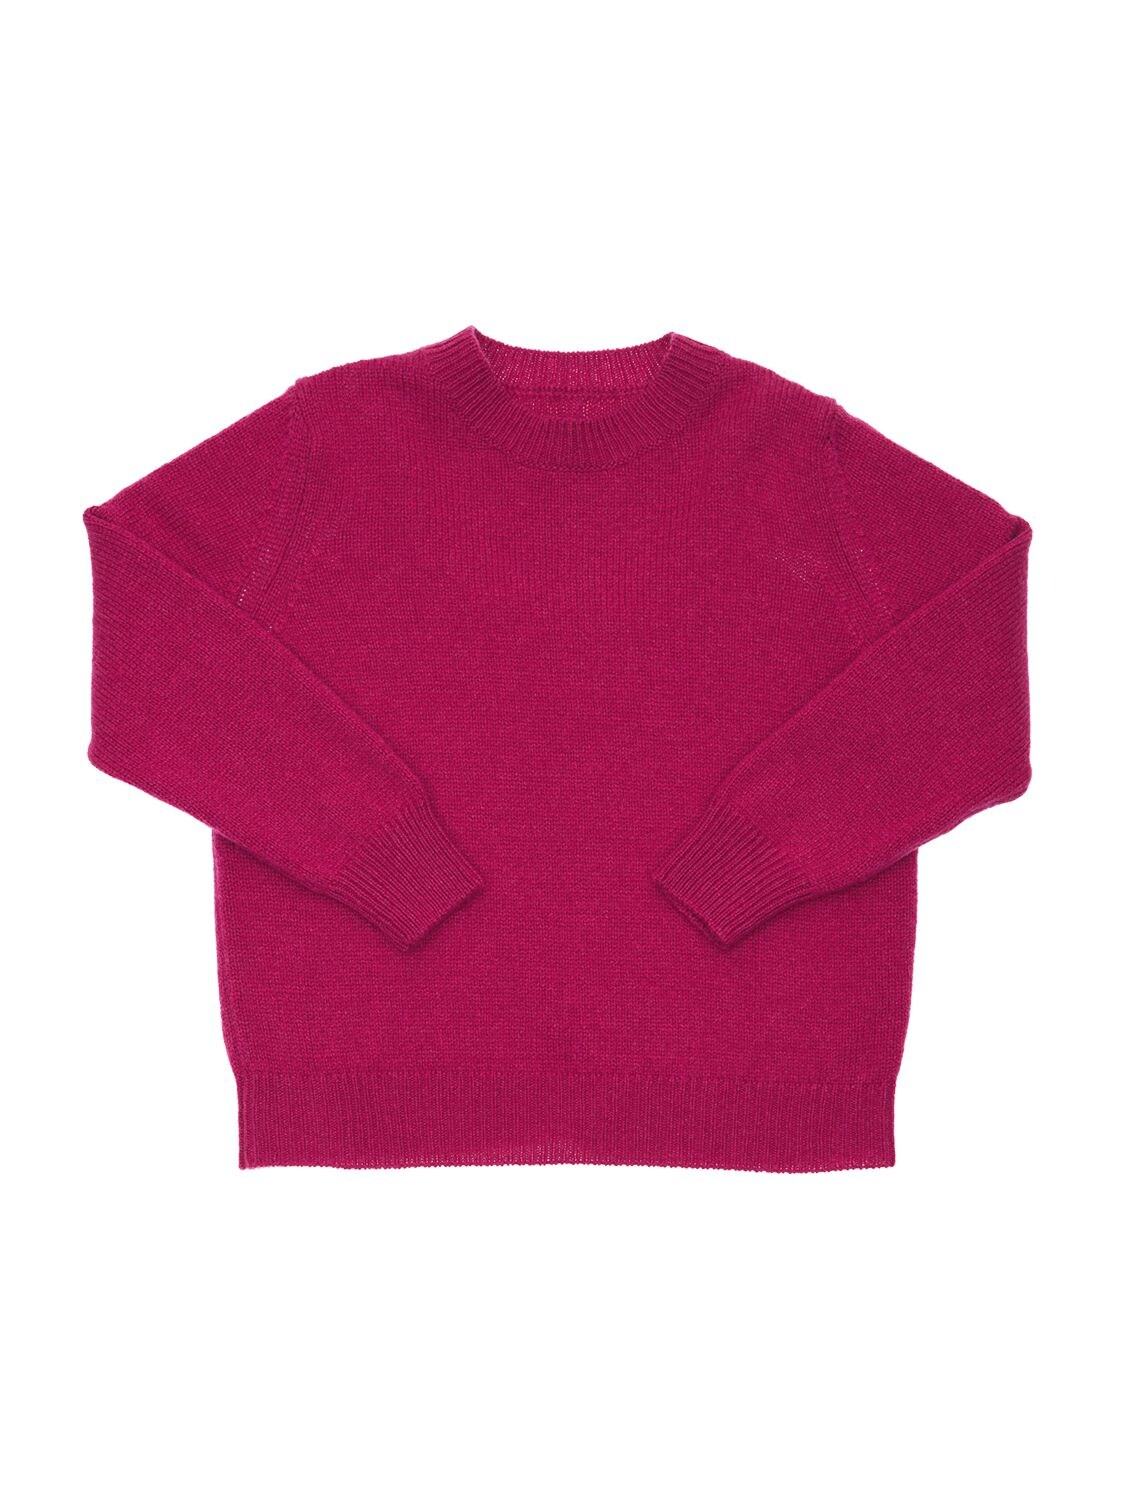 Dewey Cashmere Knit Sweatshirt